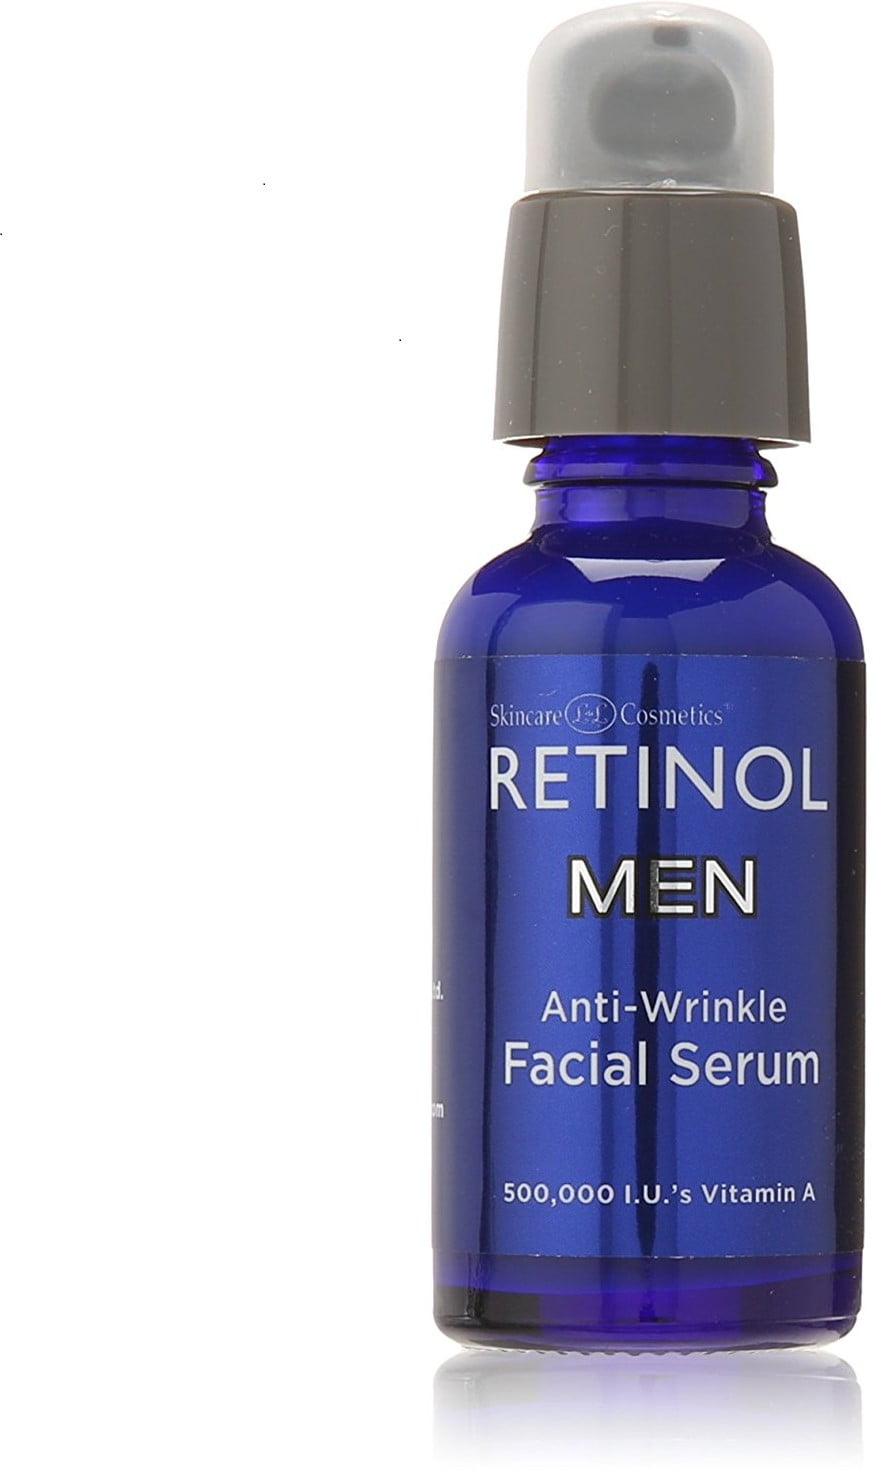 anti aging mens facial serum